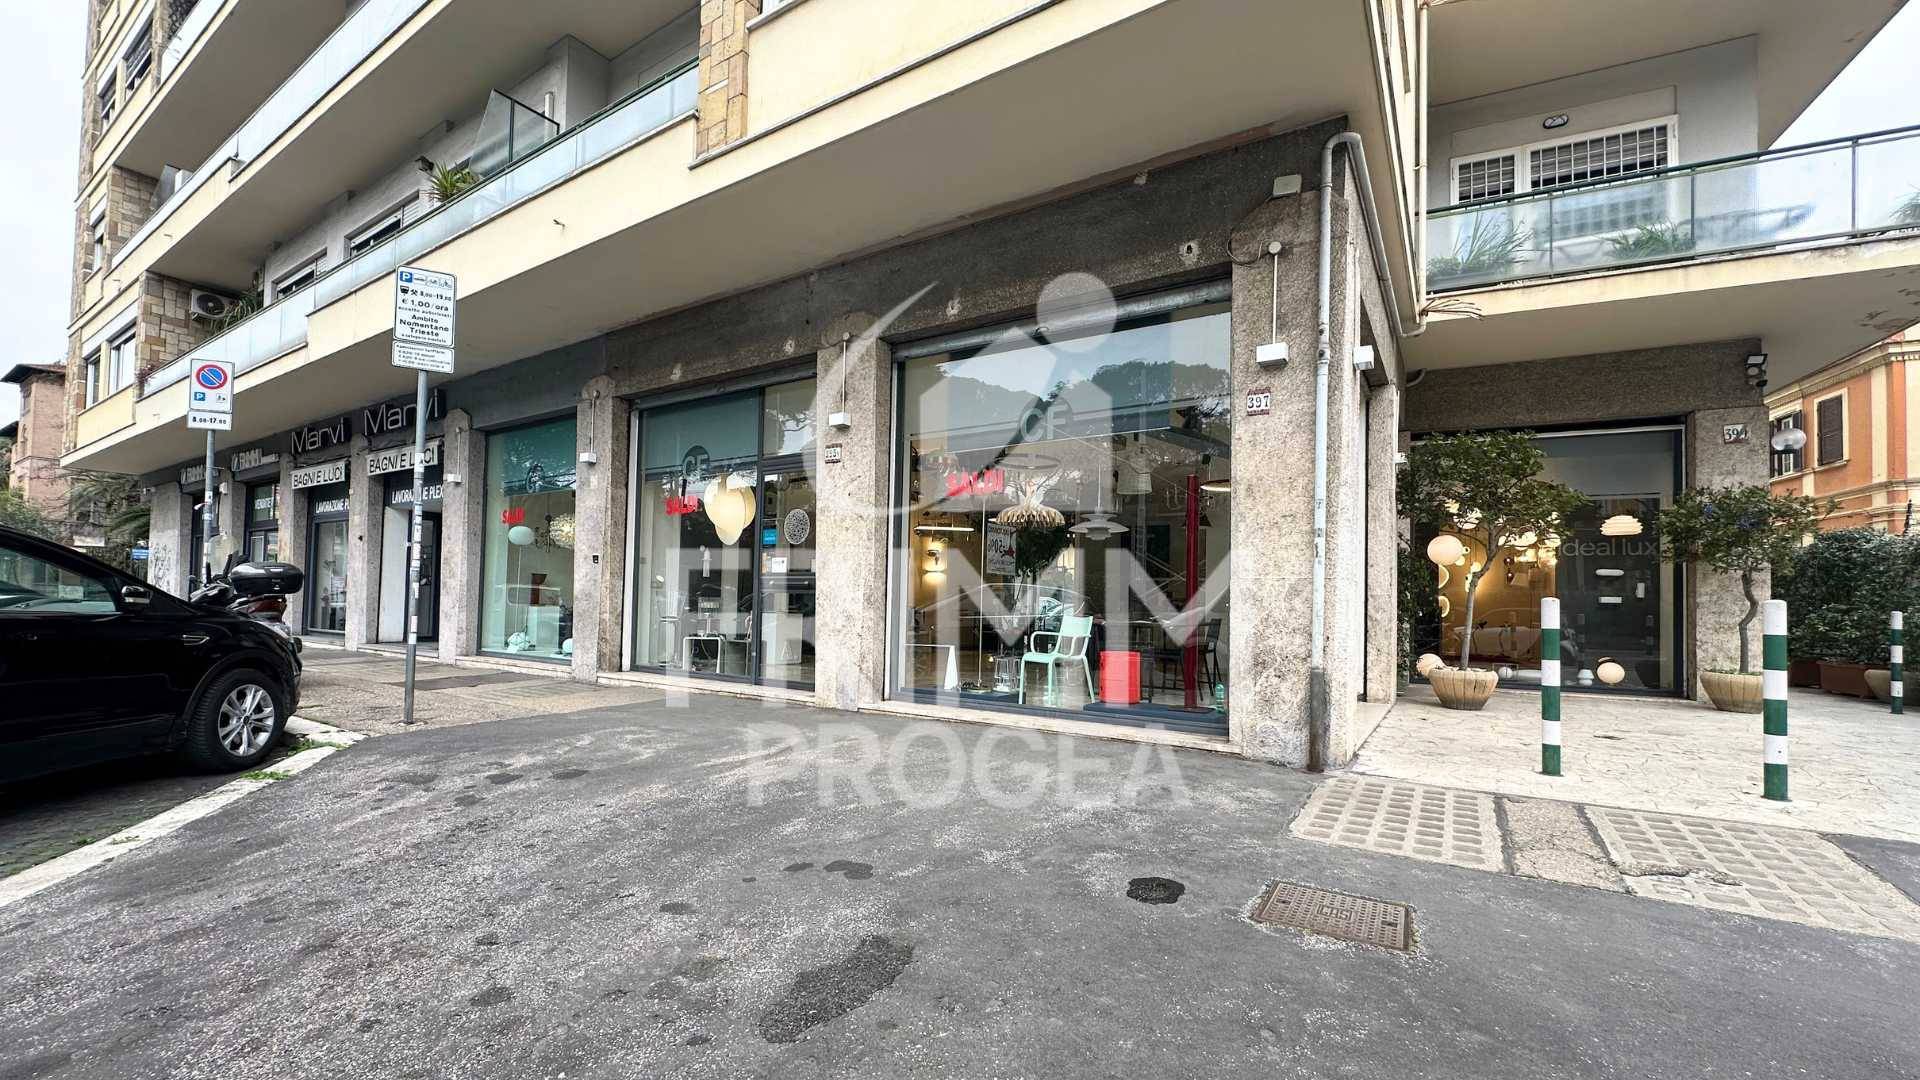 Locale commerciale in vendita, Roma trieste